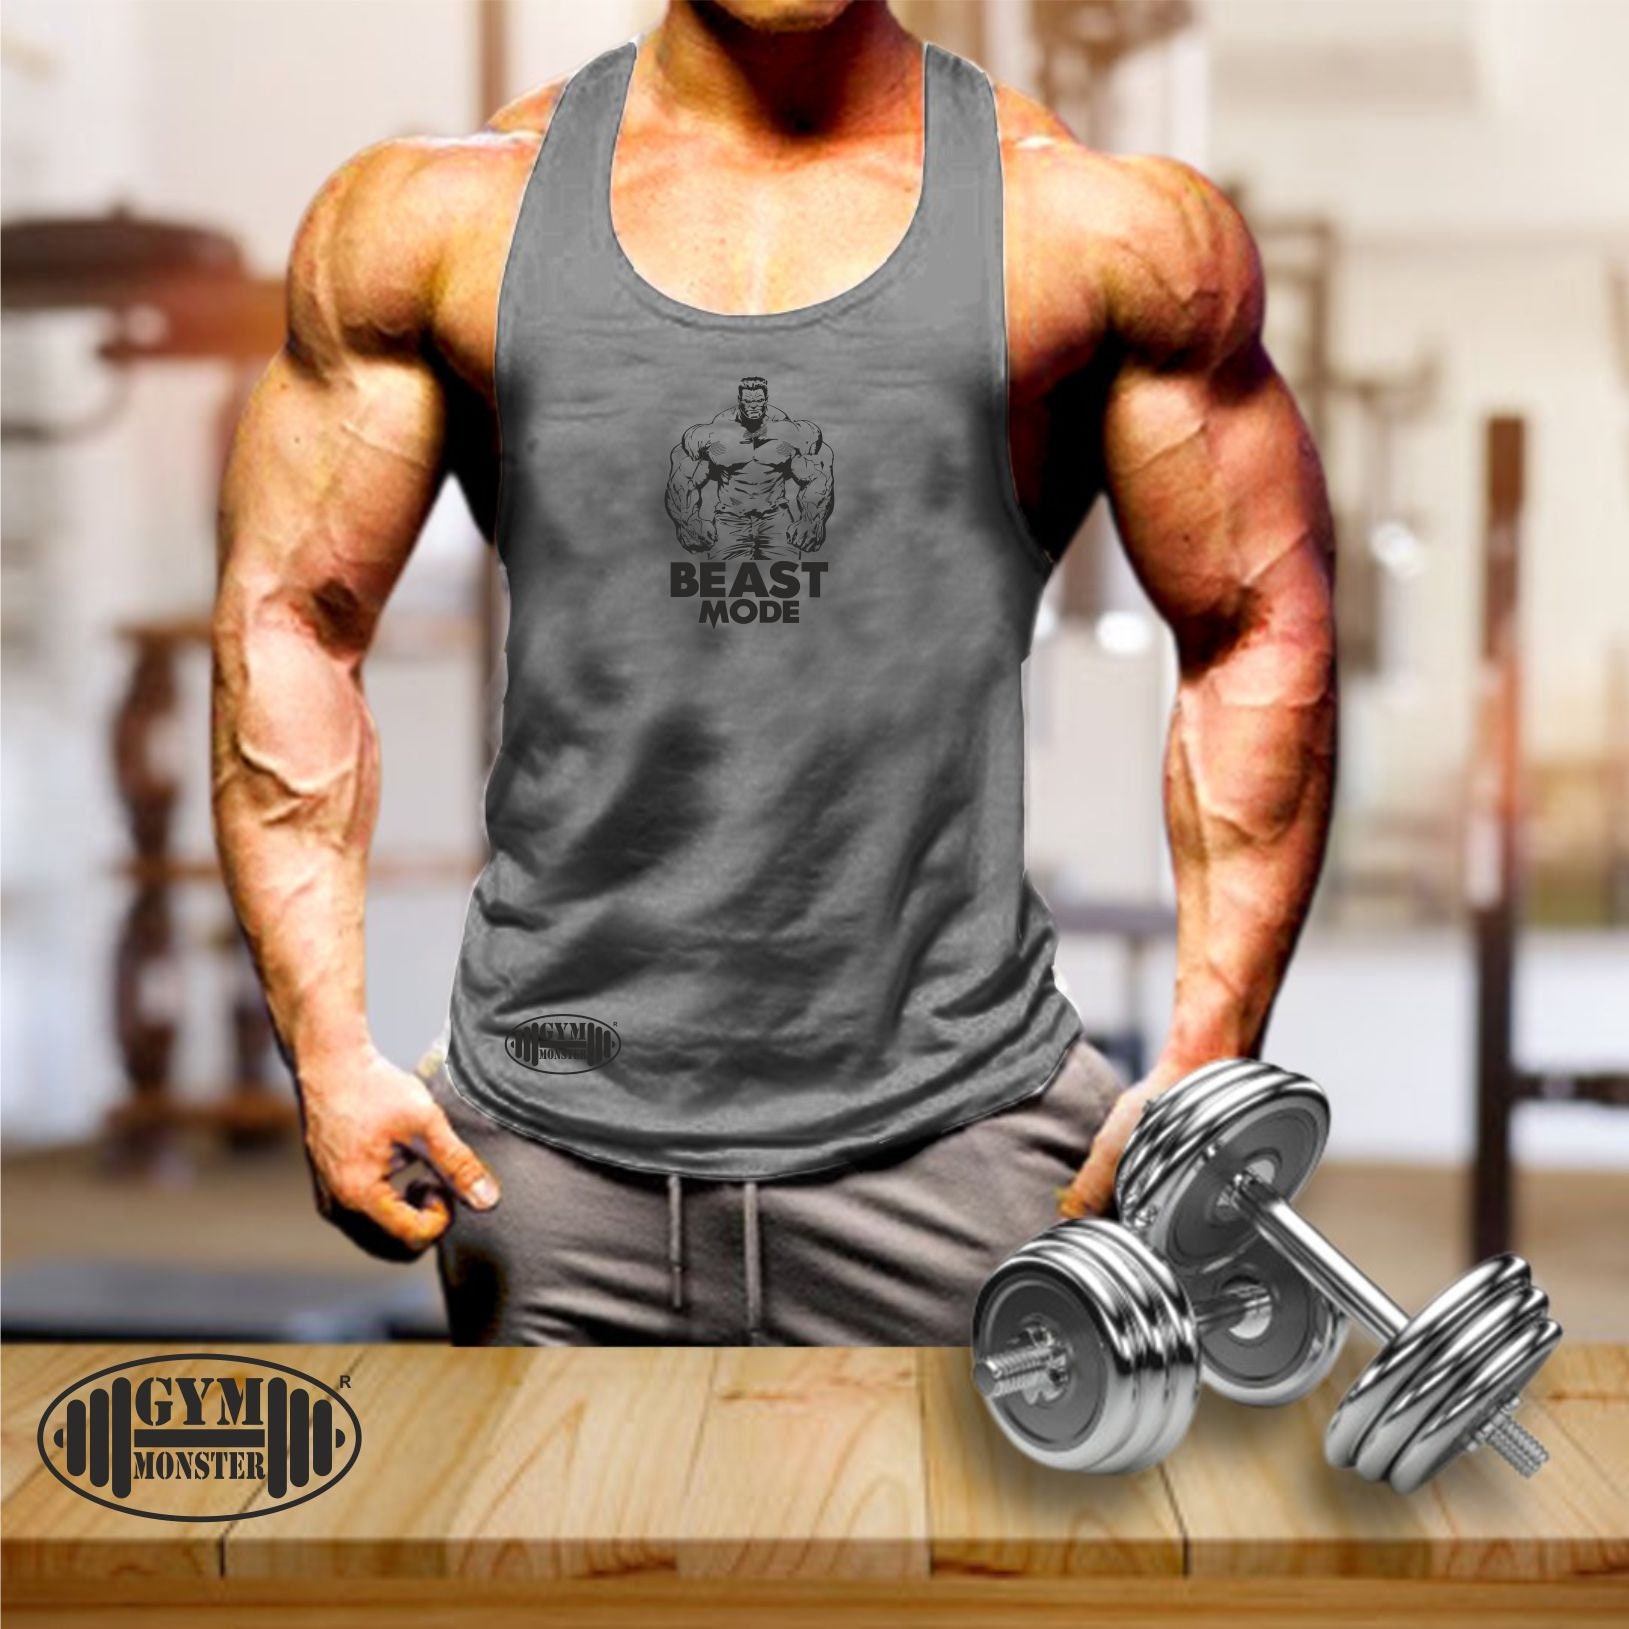 Fitness Workout Man Gym Stringer Trainig Hulk Bodybuilding Sport Tank Top  Vest